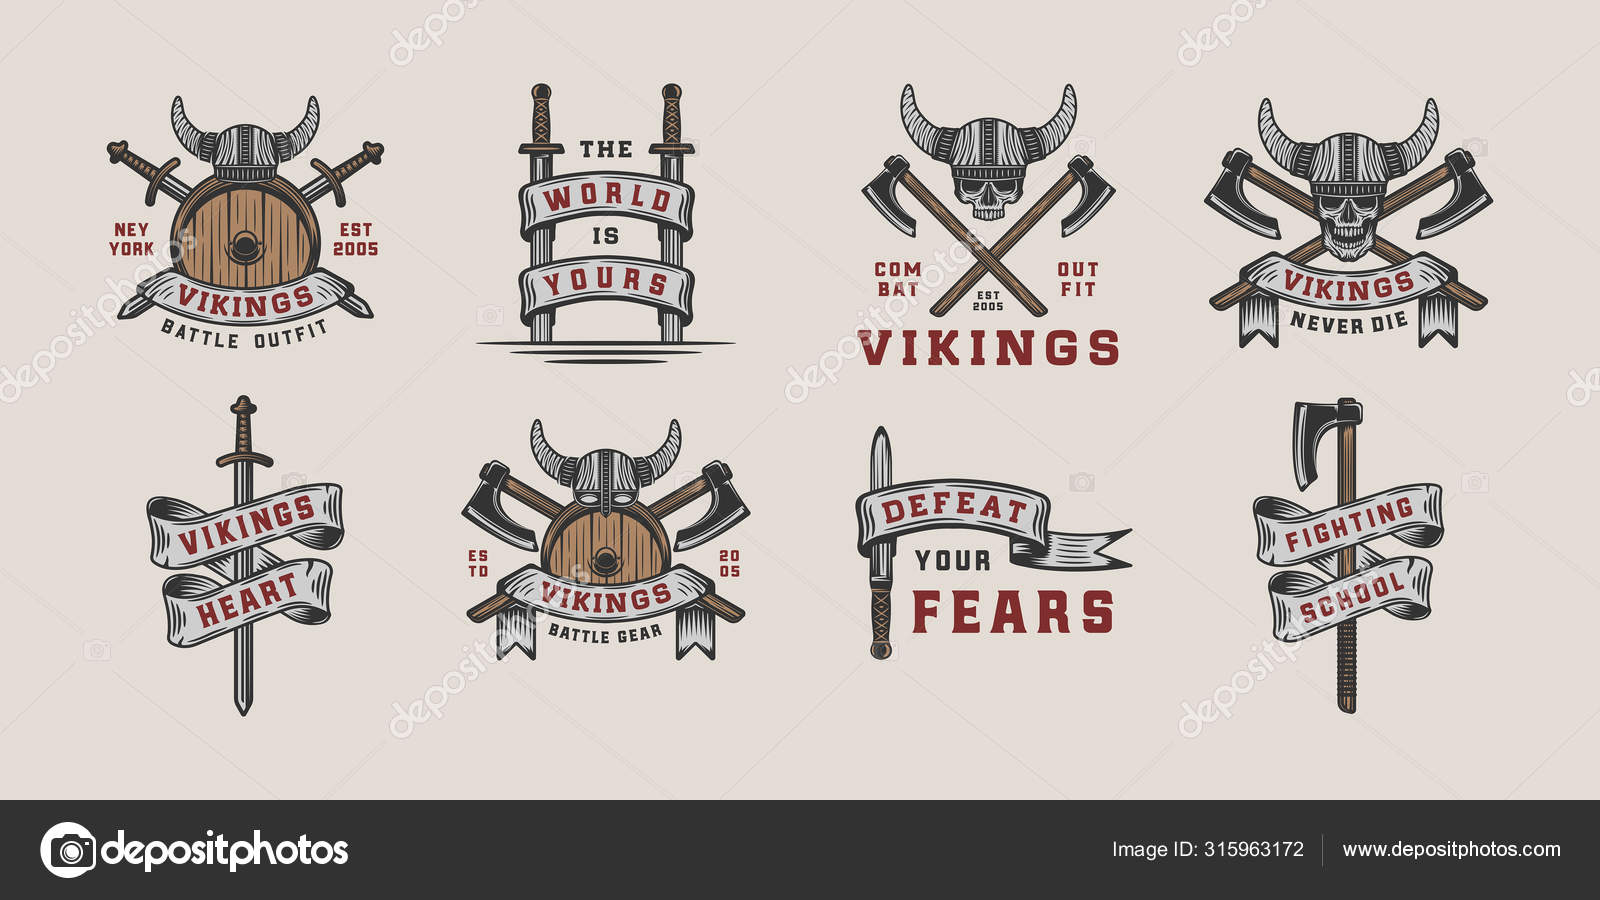 vikings vintage gear